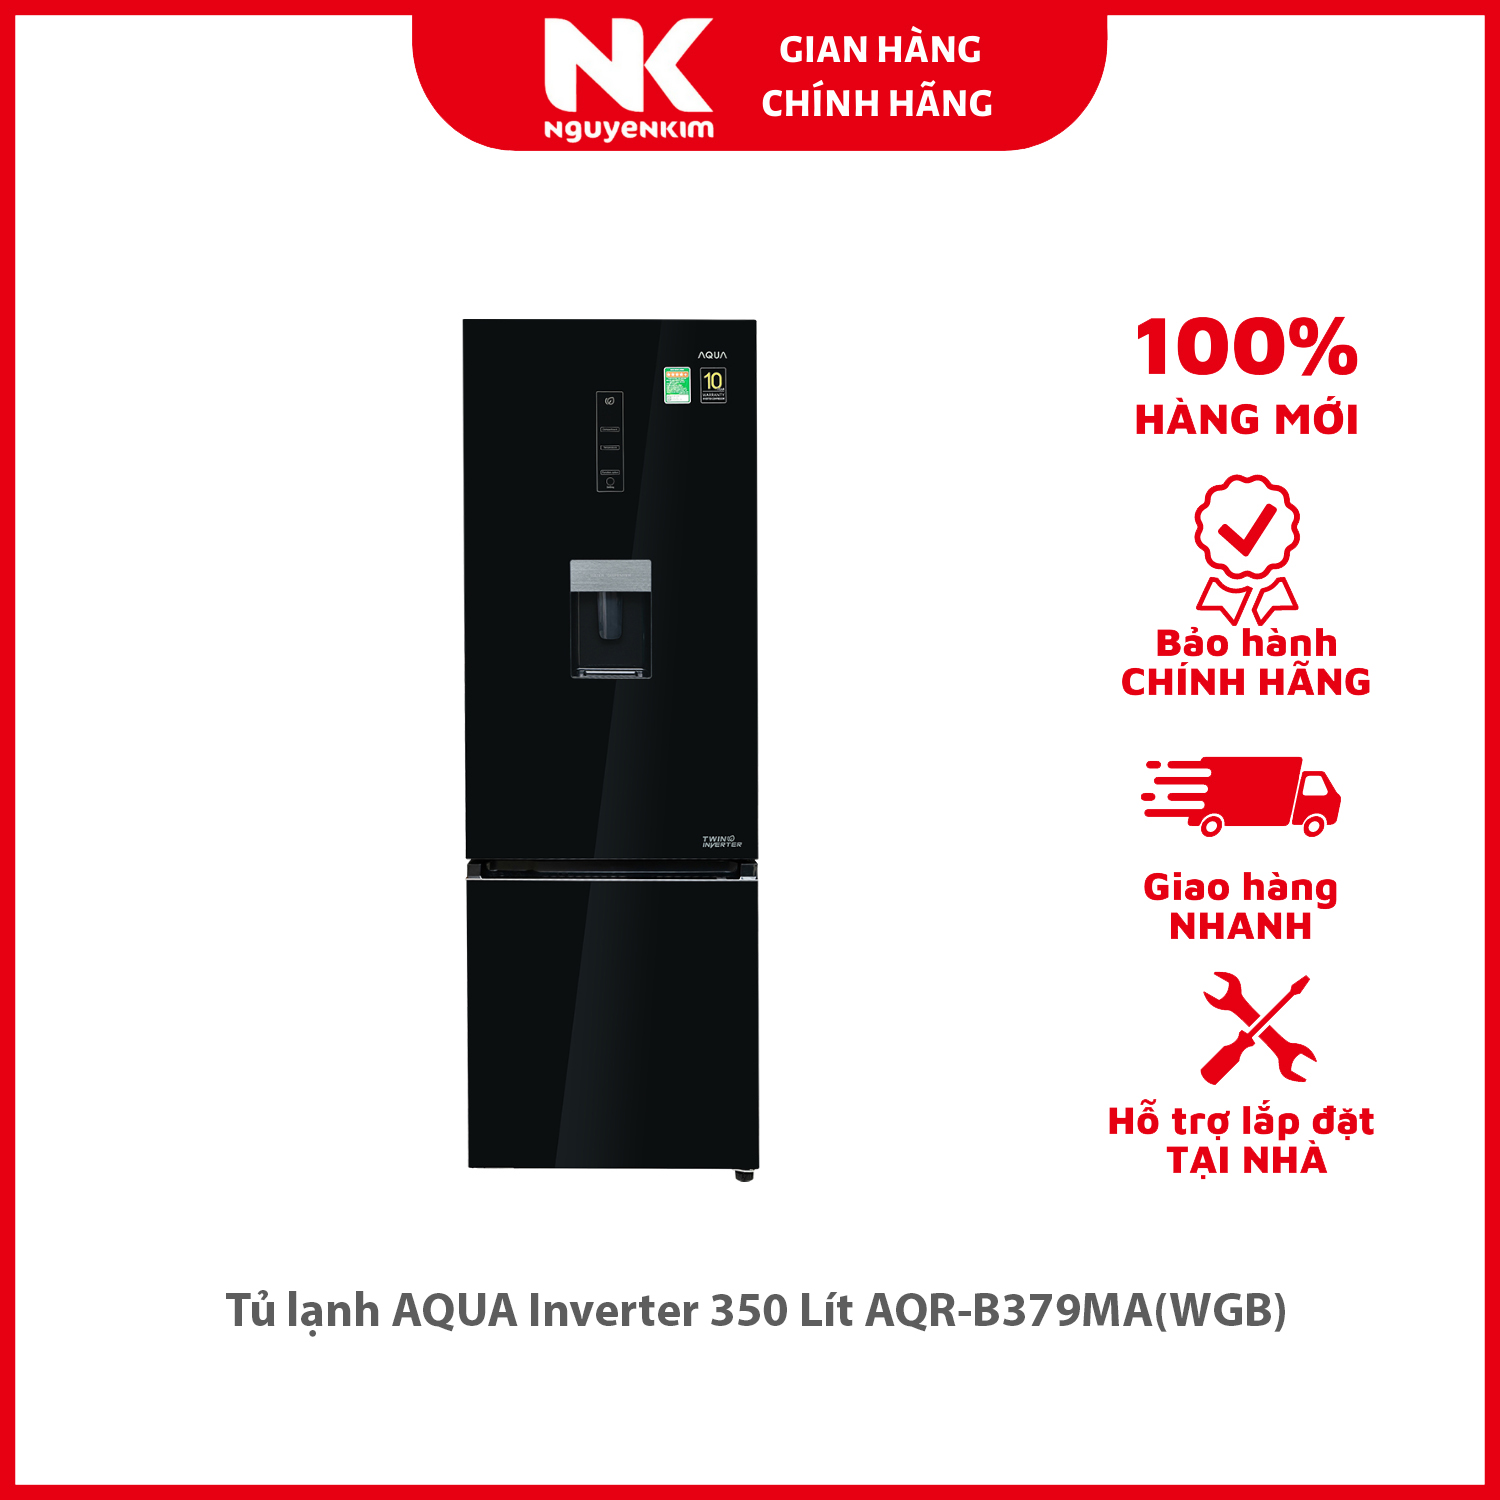 Tủ lạnh AQUA Inverter 350 Lít AQR-B379MA(WGB) - Hàng chính hãng [Giao hàng toàn quốc]